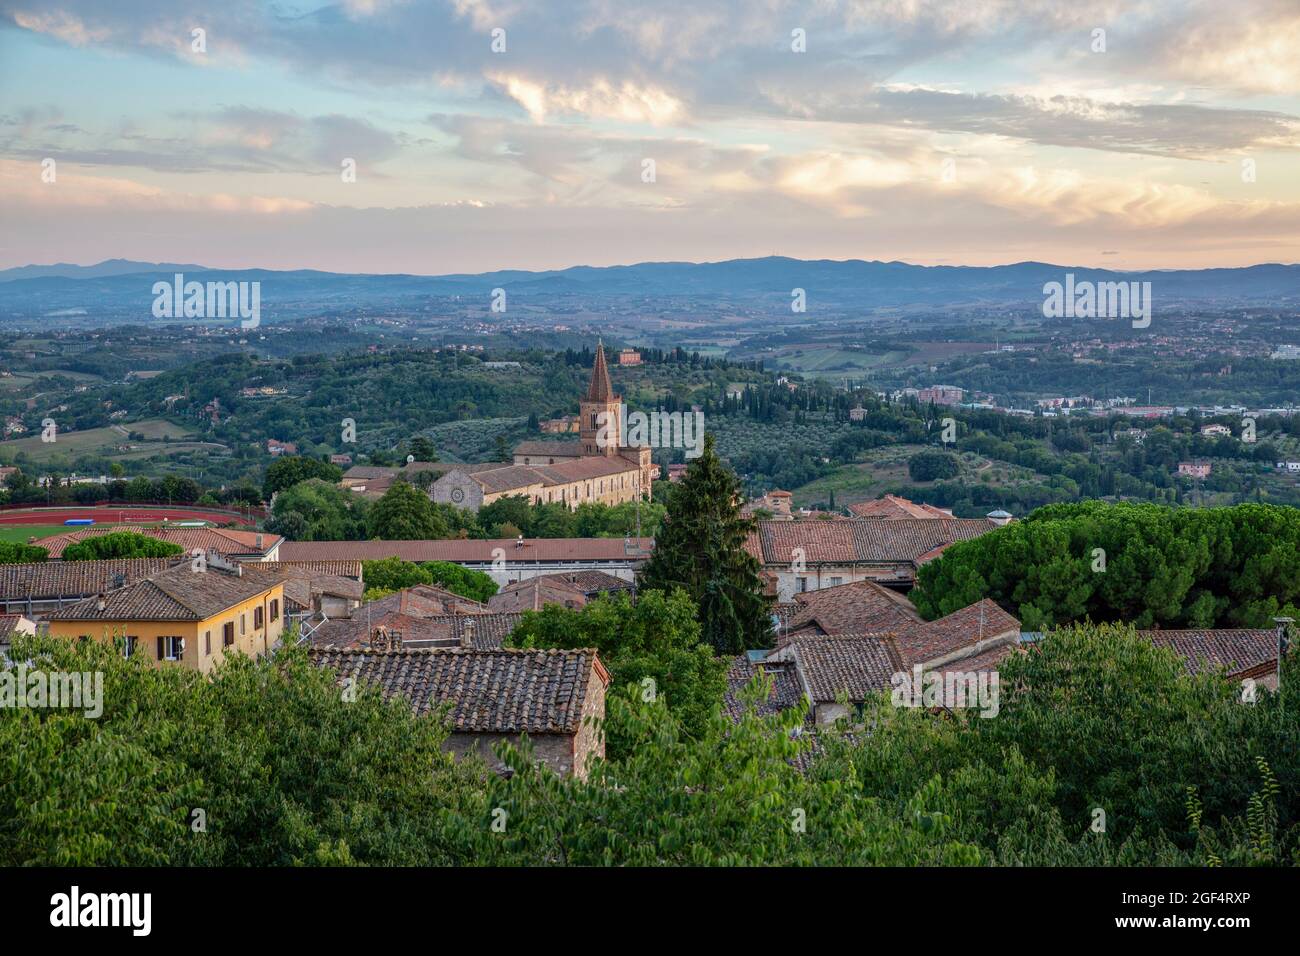 Italie, province de Pérouse, Pérouse, vue de la ville en périphérie entourée de collines au crépuscule Banque D'Images